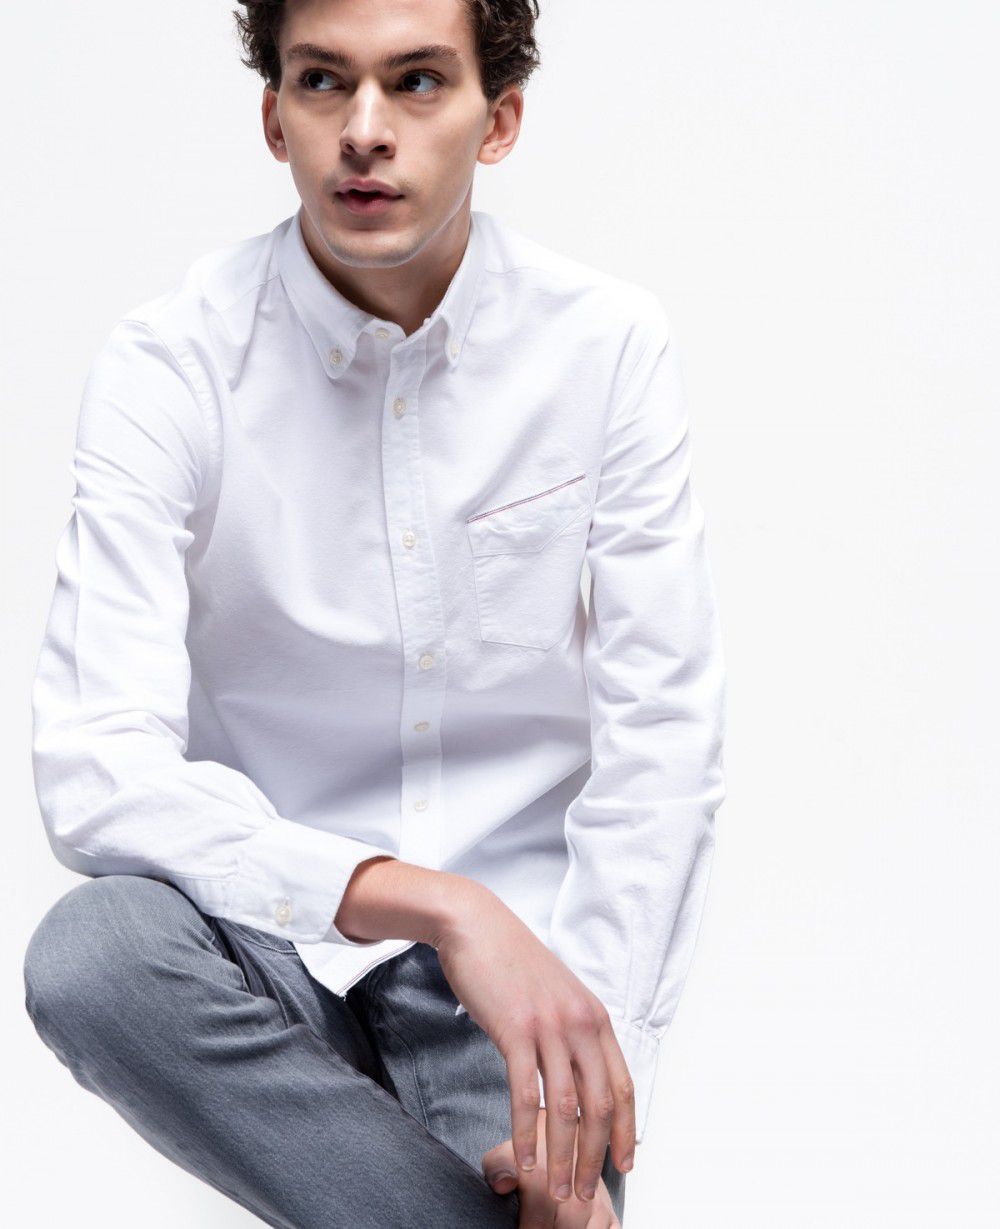 A male model wearing a white button down shirt